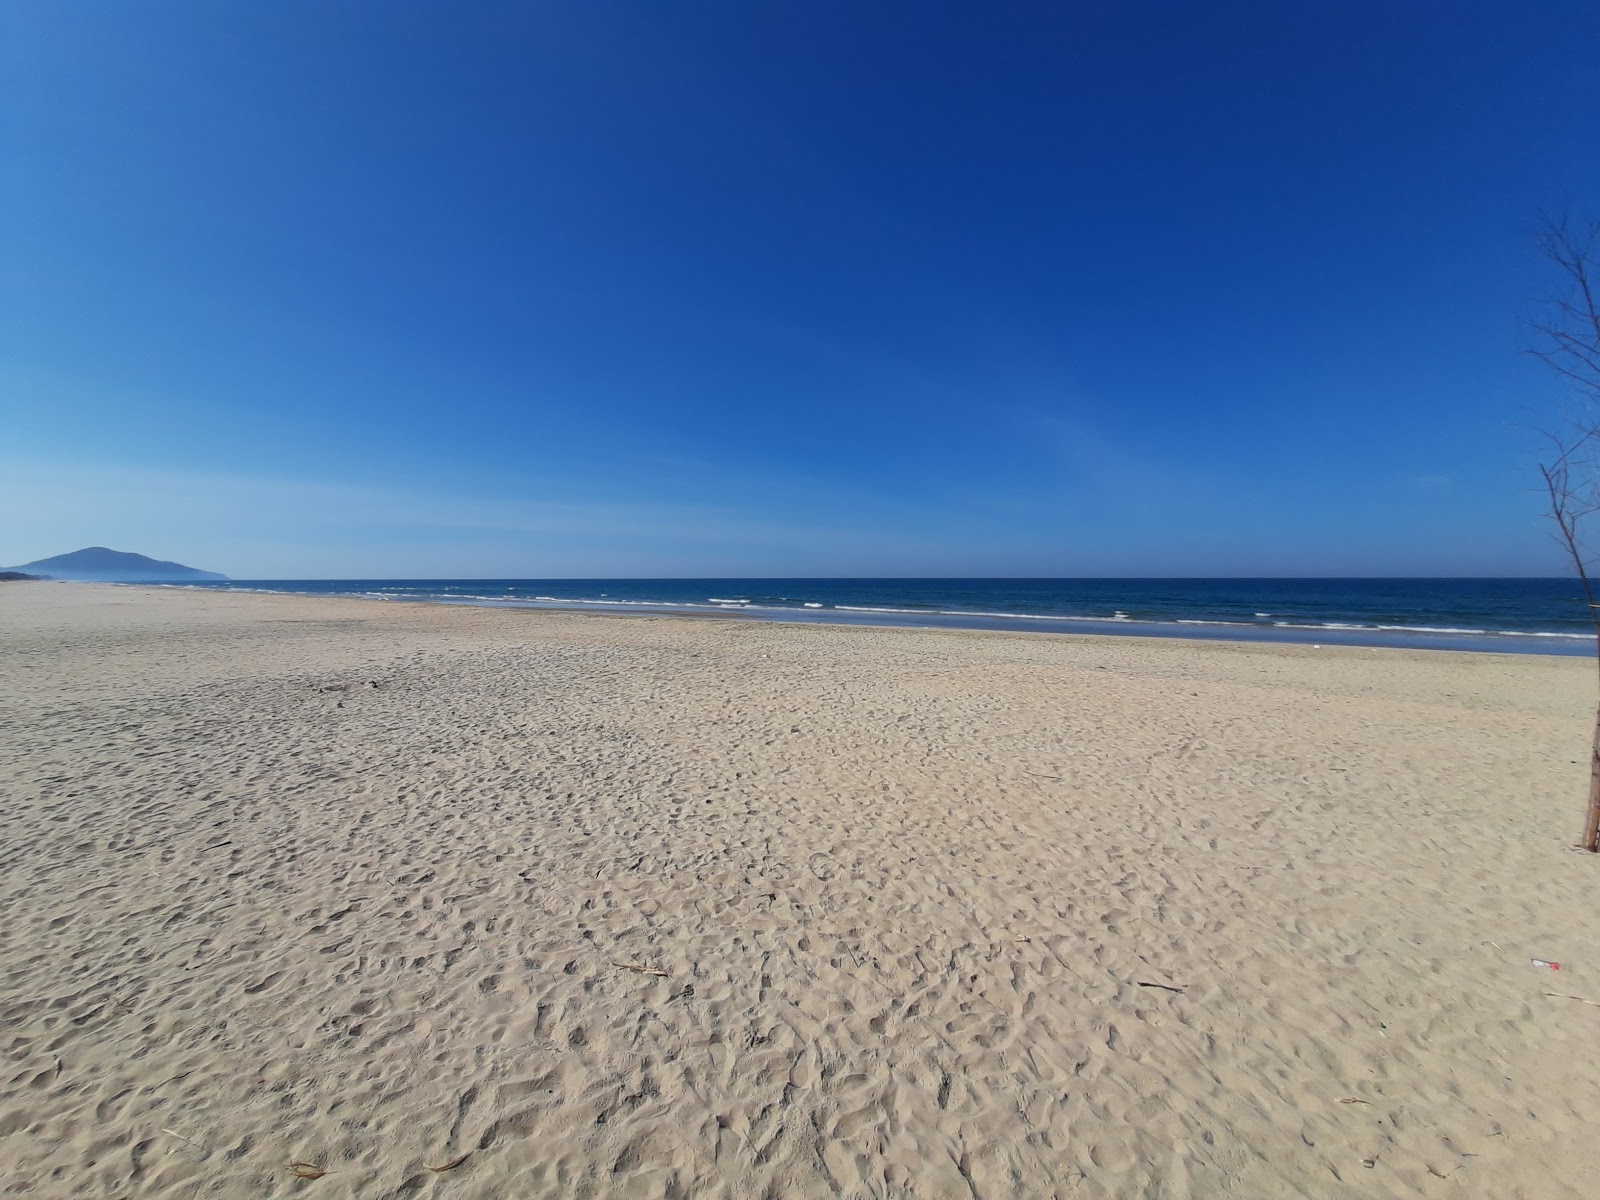 Fotografie cu Lang Co Beach - locul popular printre cunoscătorii de relaxare